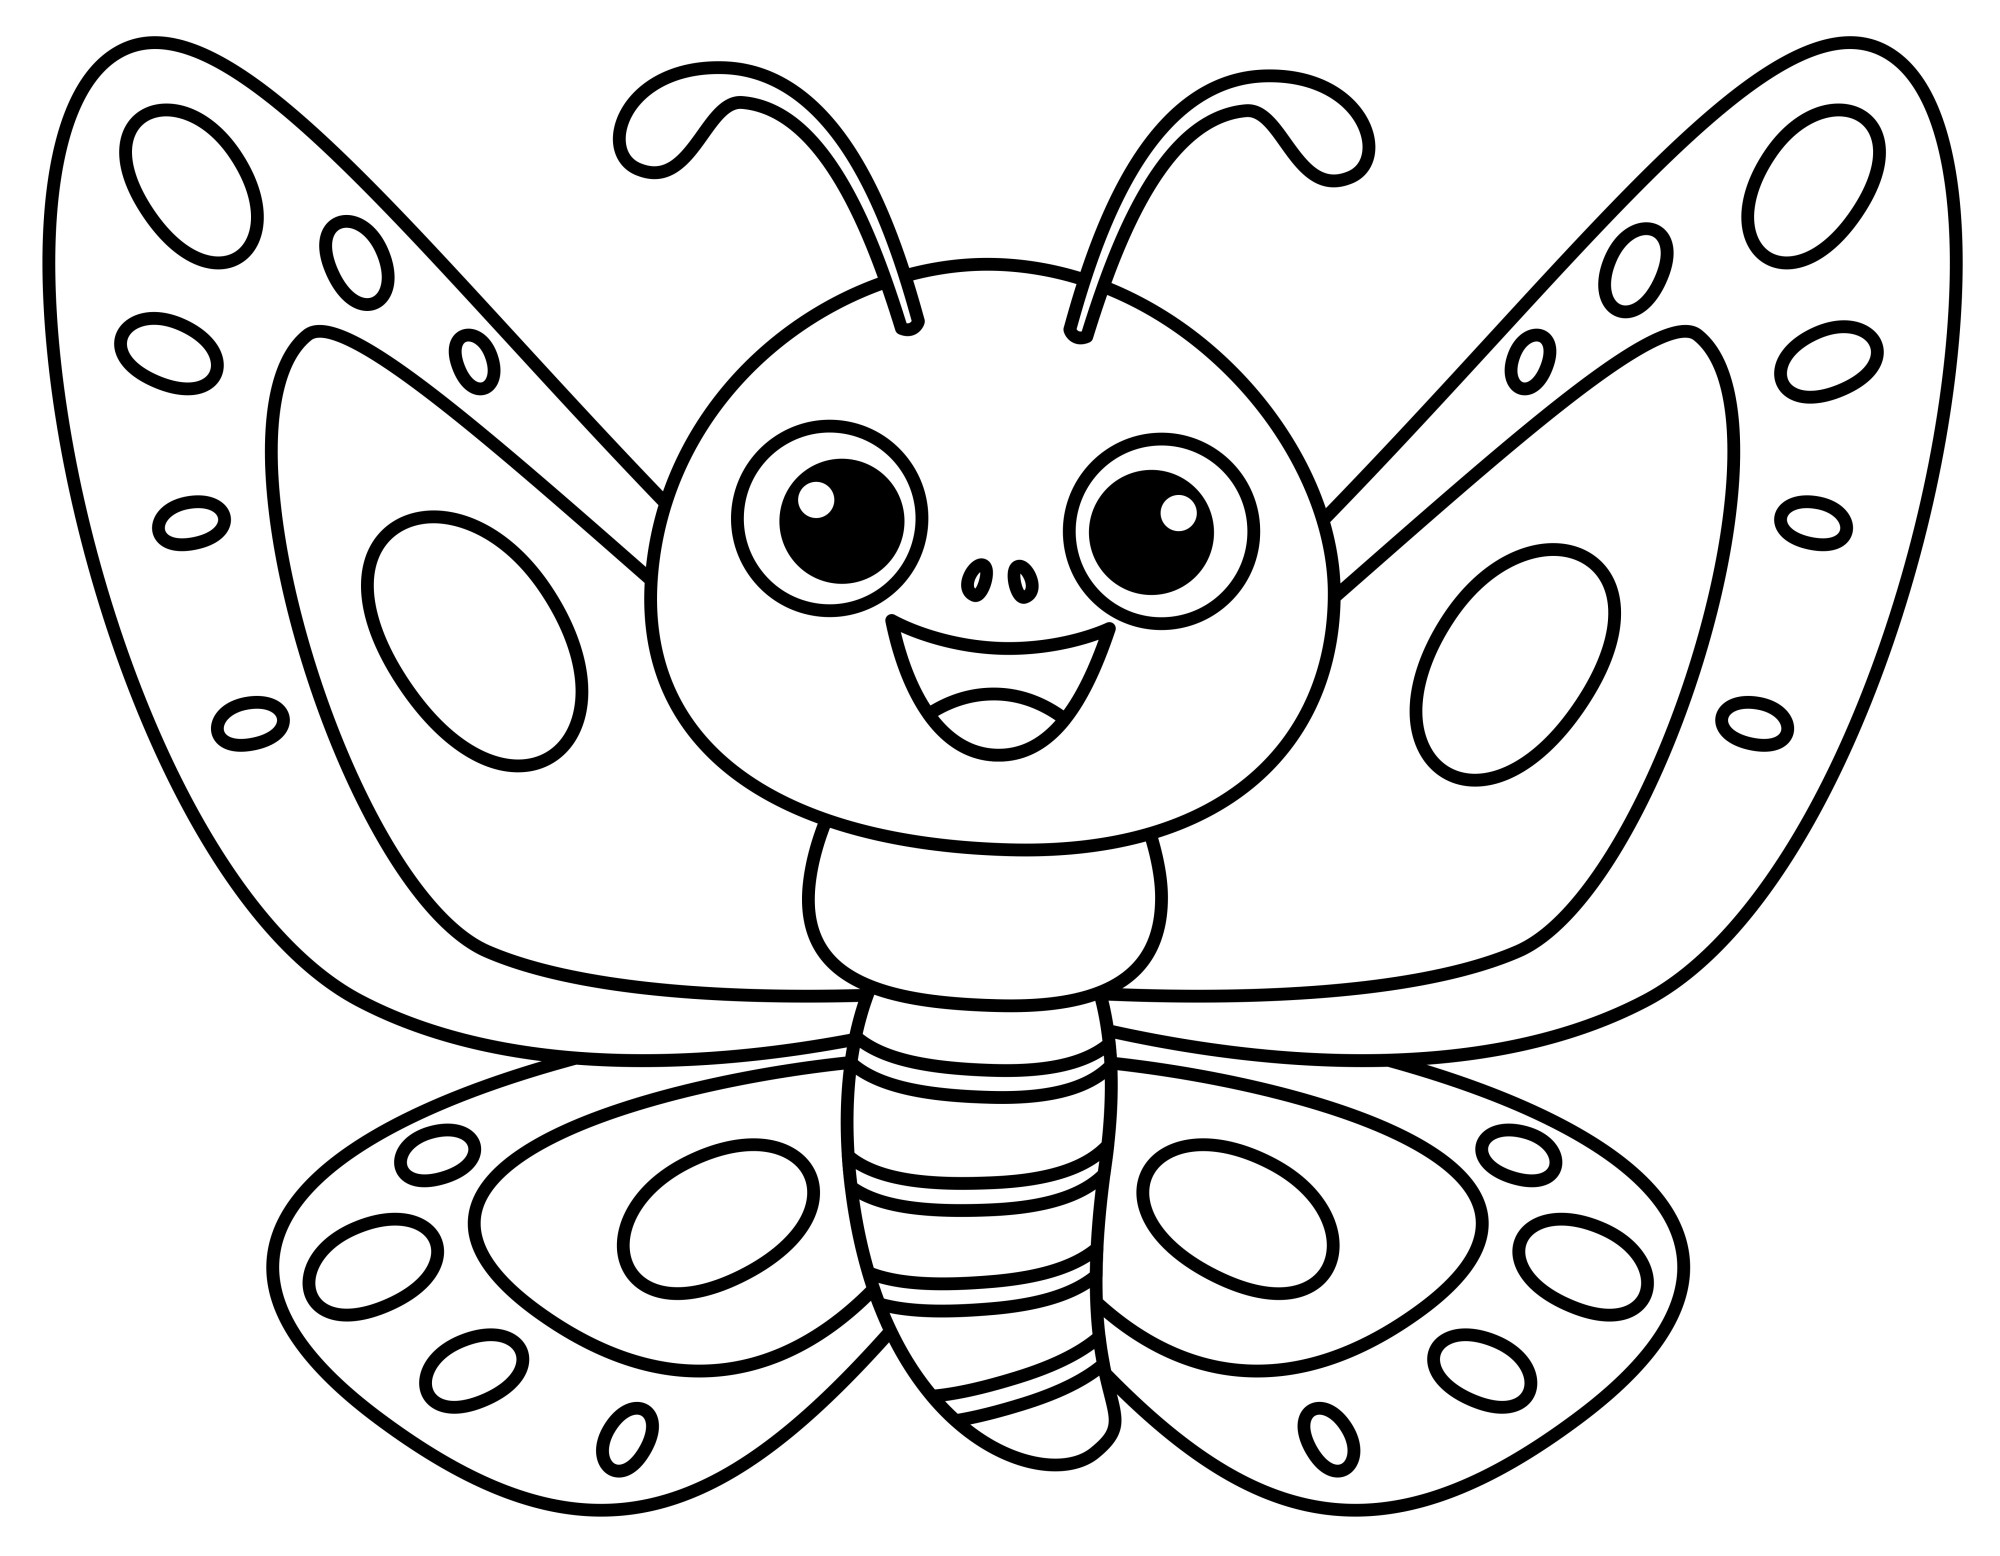 Раскраска для детей: мультяшная маленькая бабочка с улыбкой и большими глазами